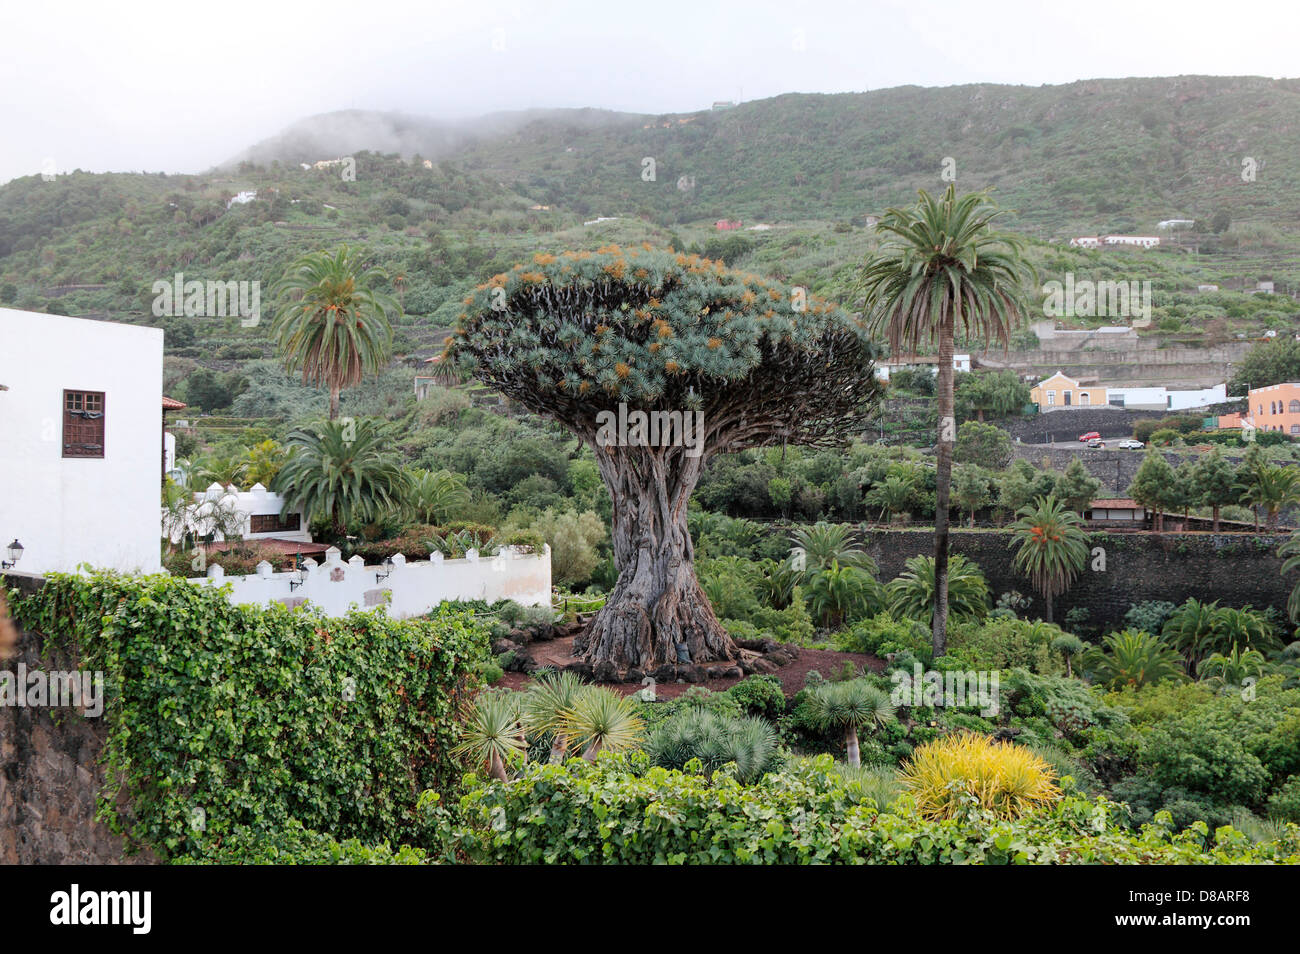 Älteste Baum, Drachenbaum, Teneriffa, Kanarische Inseln, Spanien Stockfoto